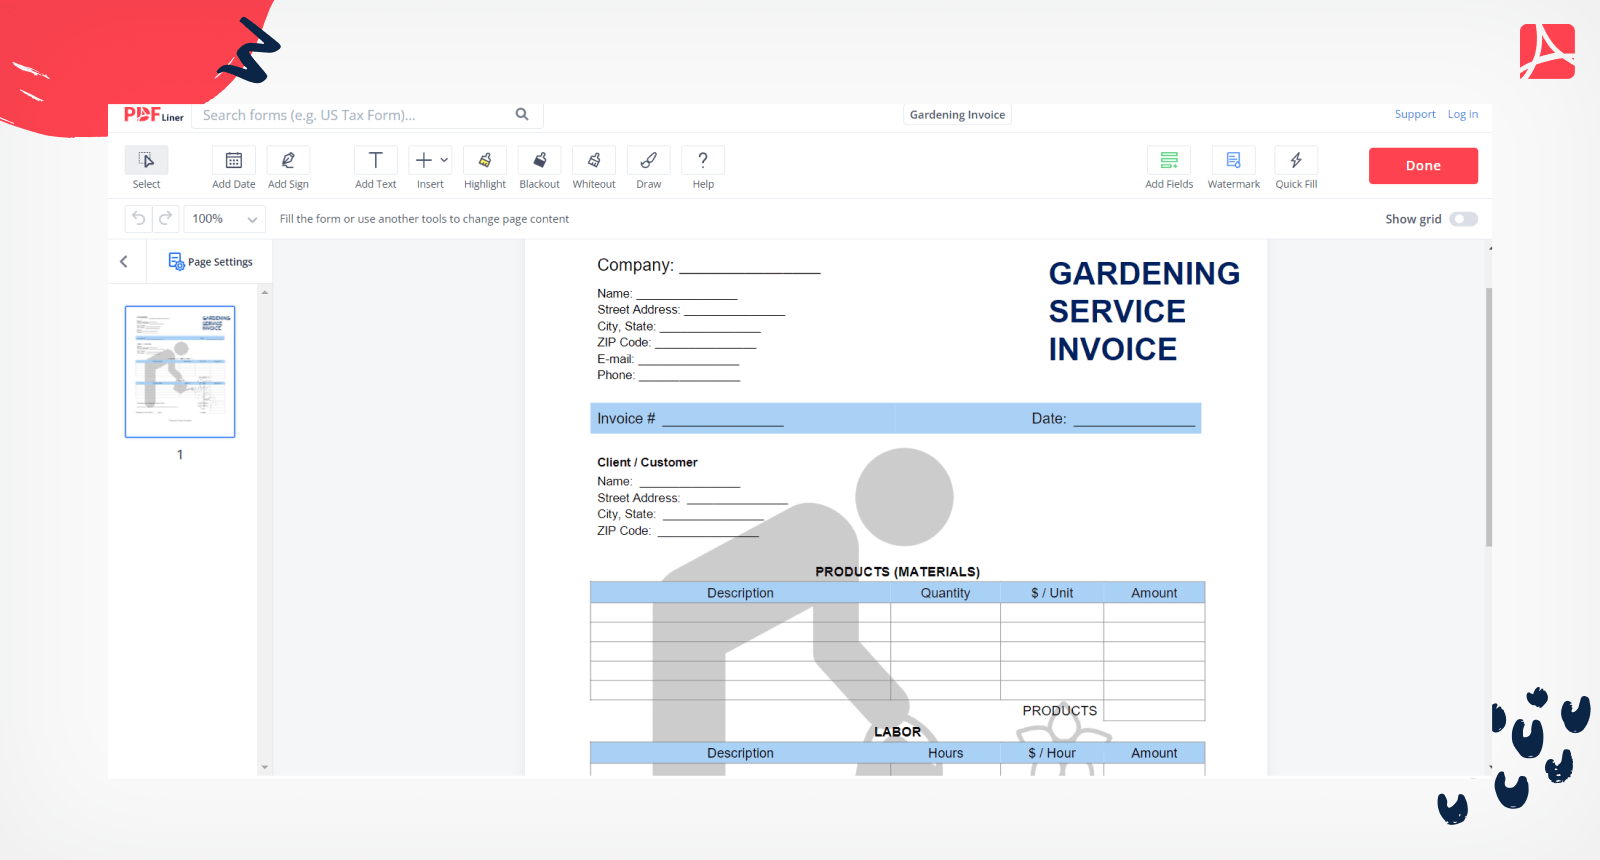 Gardening Invoice on PDFLiner